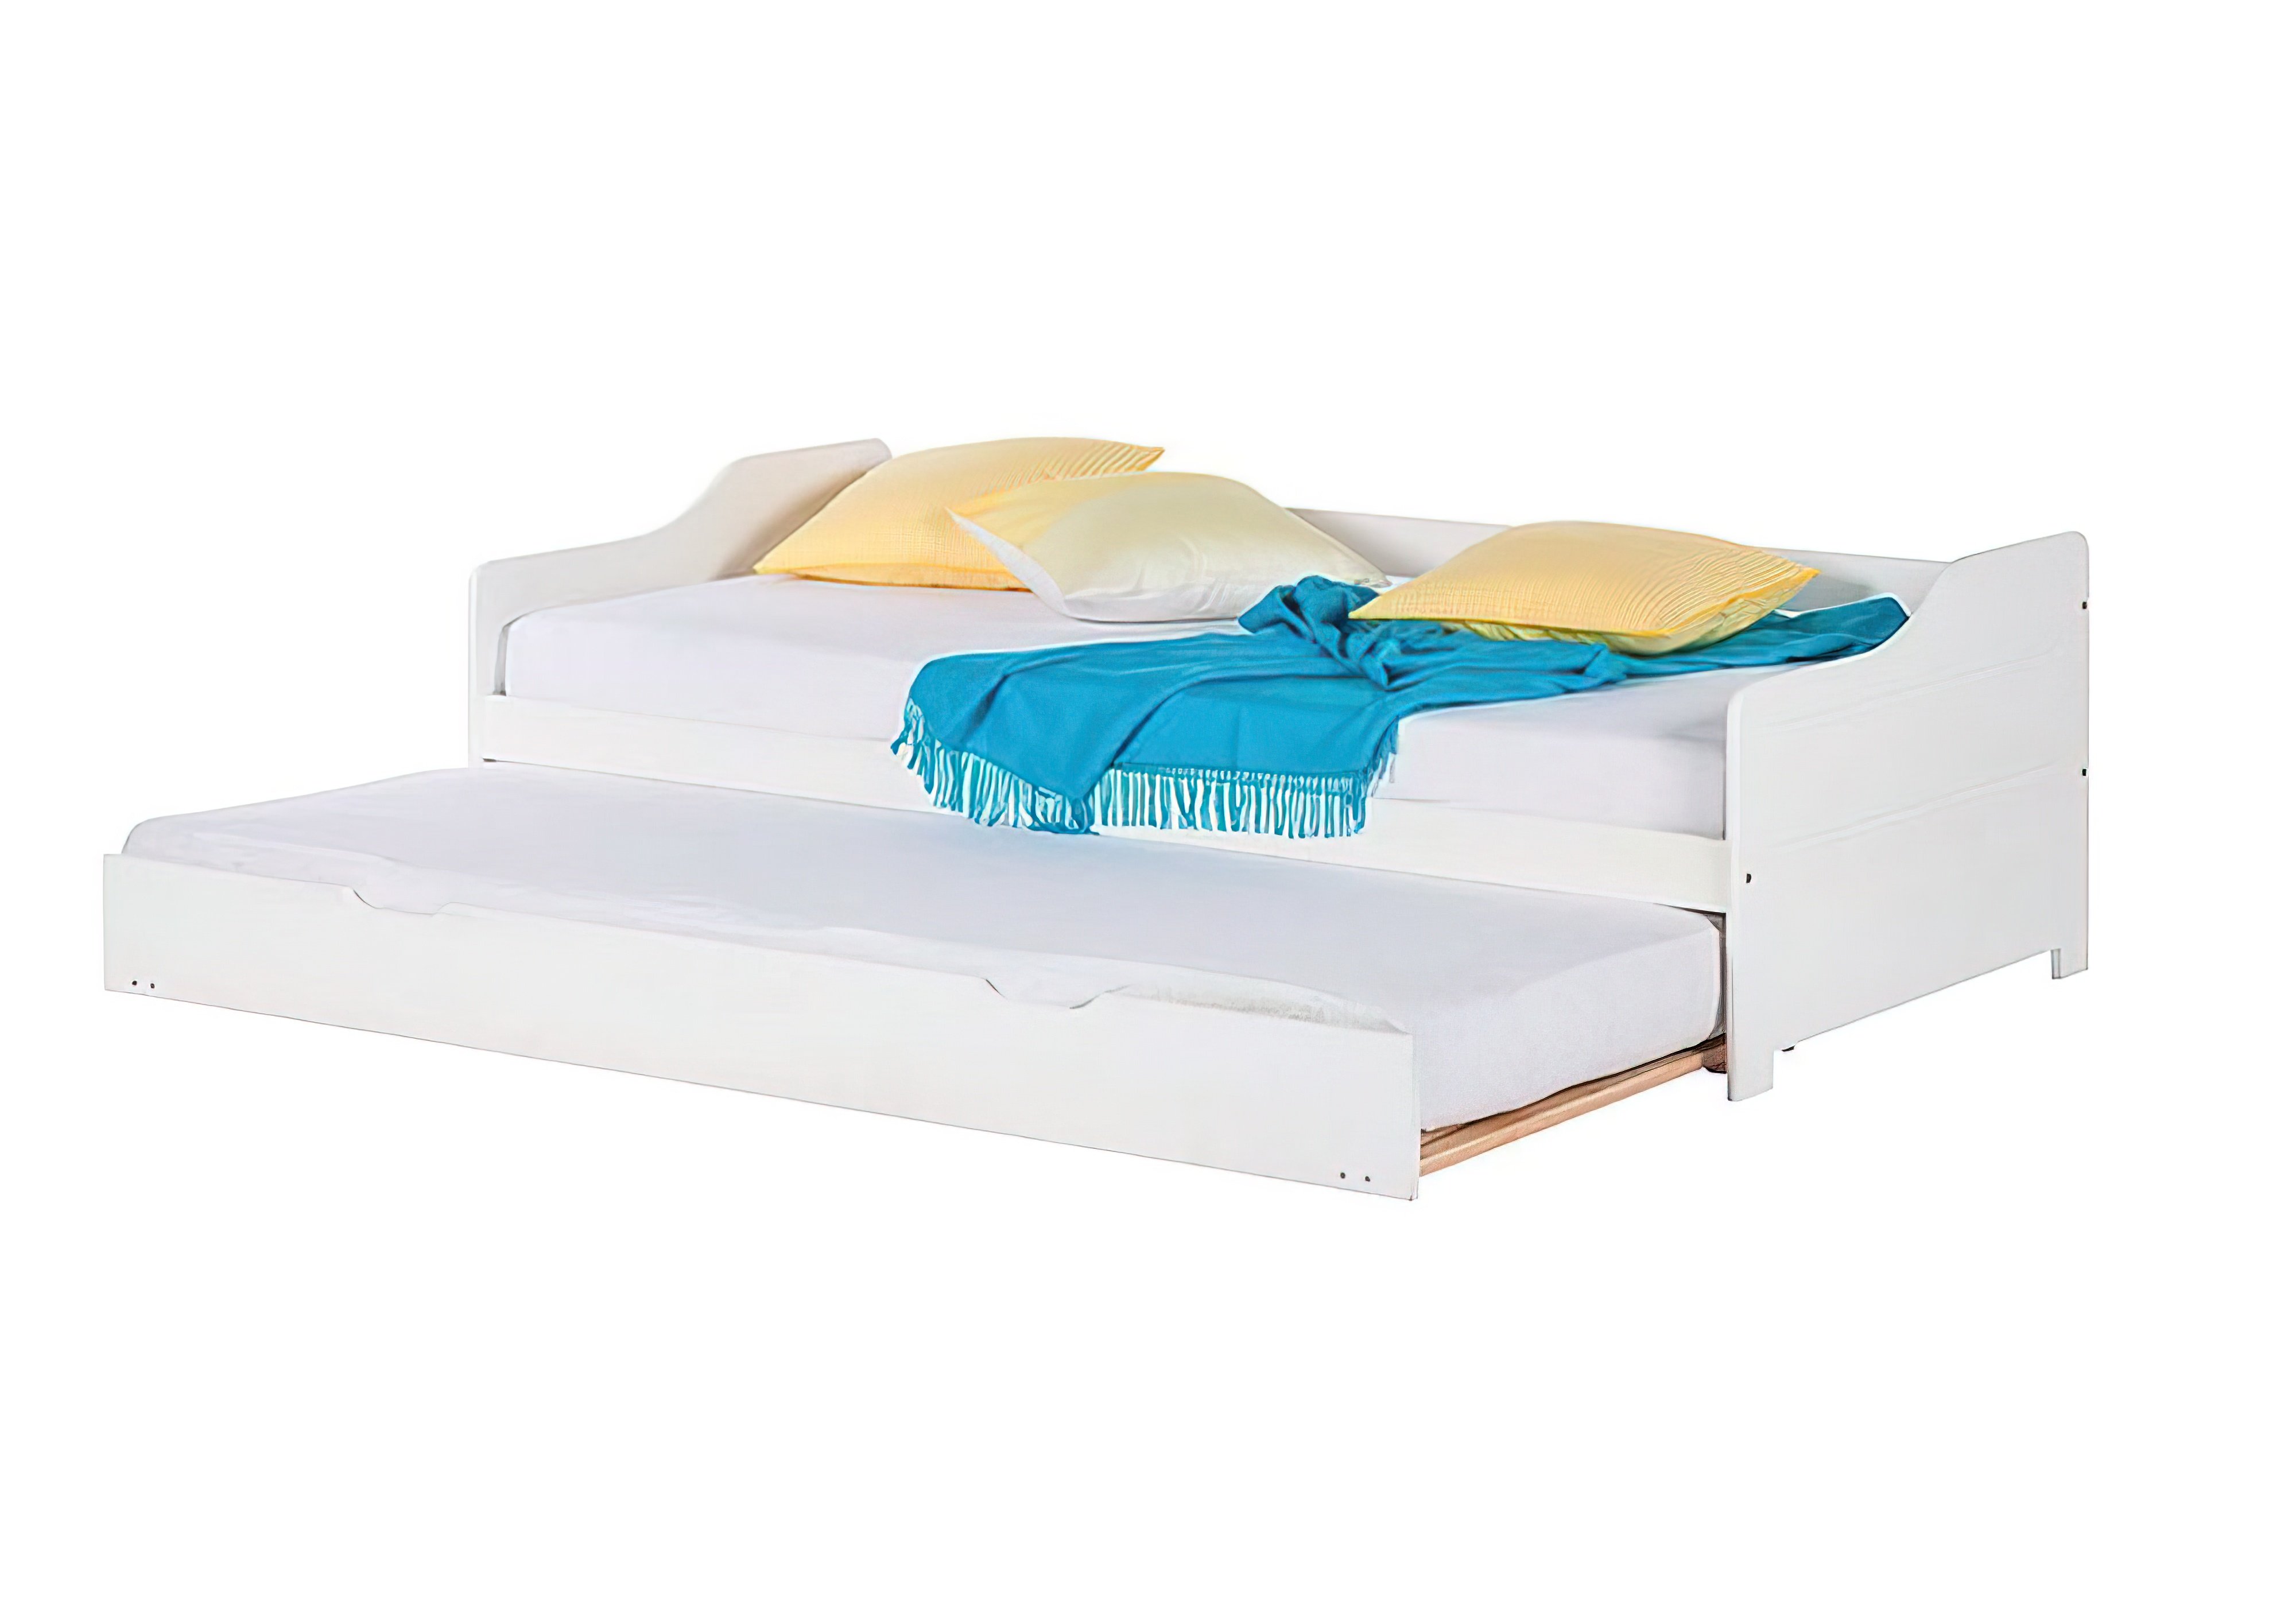  Купить Детские кровати Детская кровать "Mobler b024" Mobler